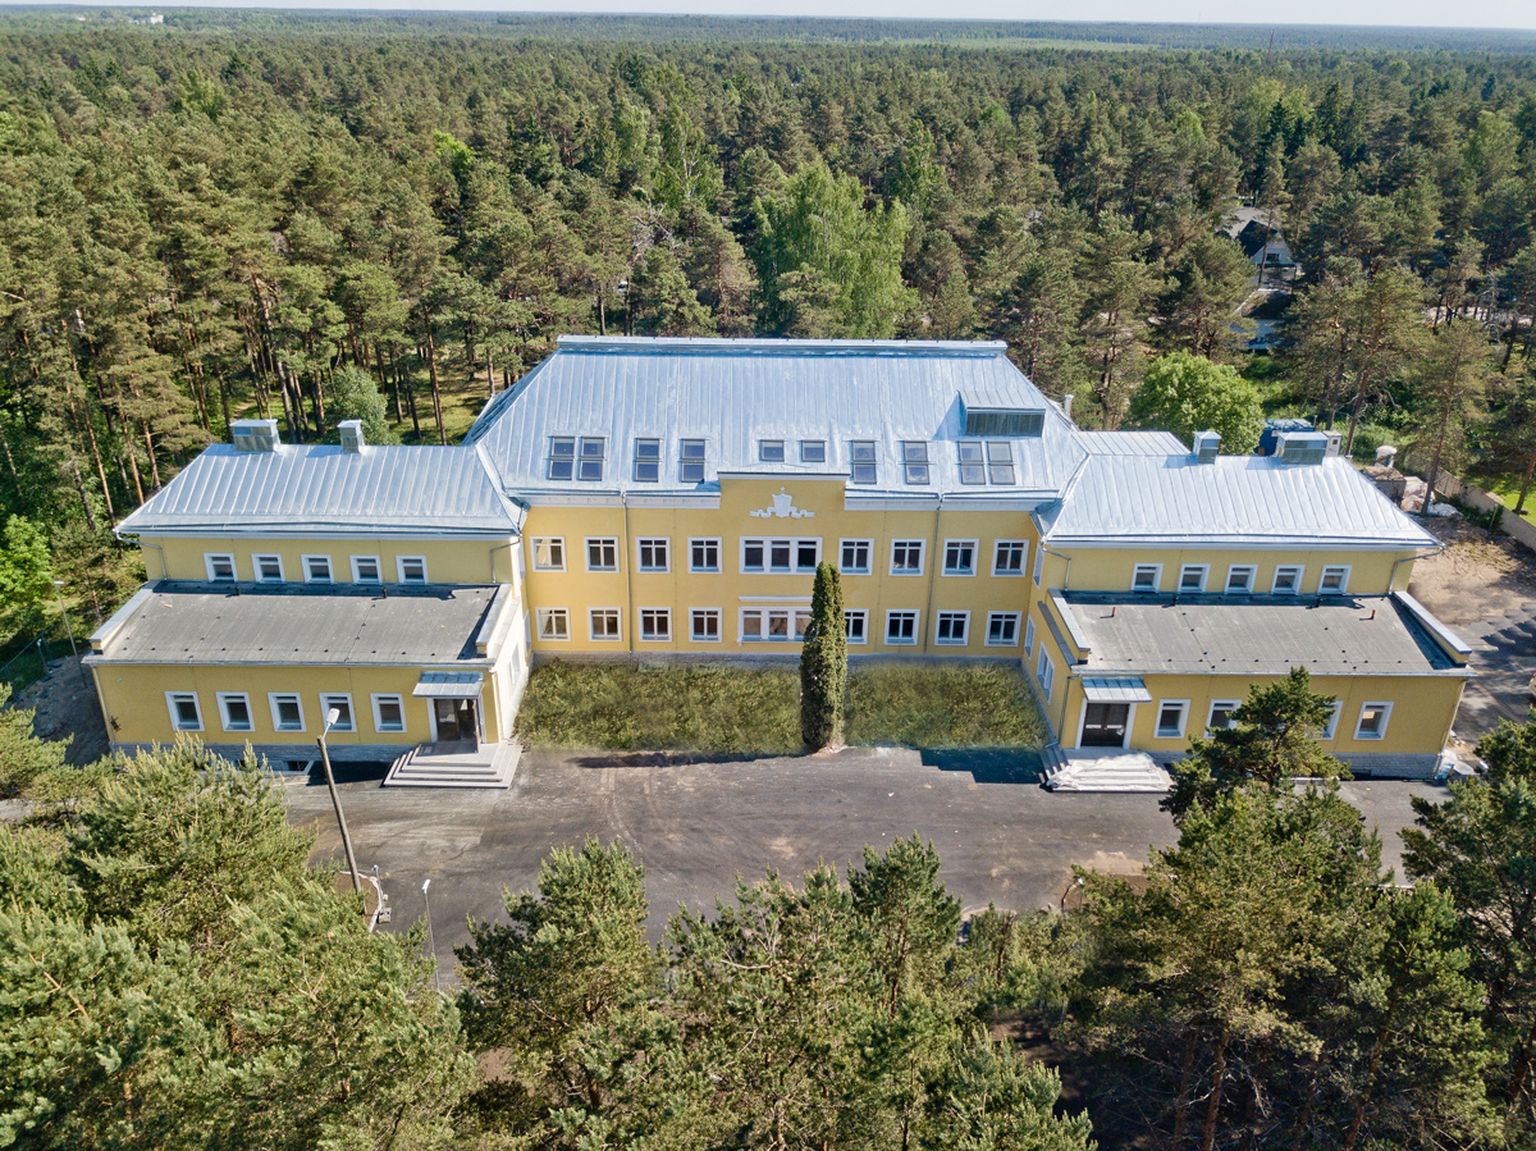 Senised suurimad Pihlakodud on 120-kohaline Tapal ning Tallinna 100-kohaline eakate kodu Nõmmel. Pihlakodude ketti arendab Viru Haigla AS.